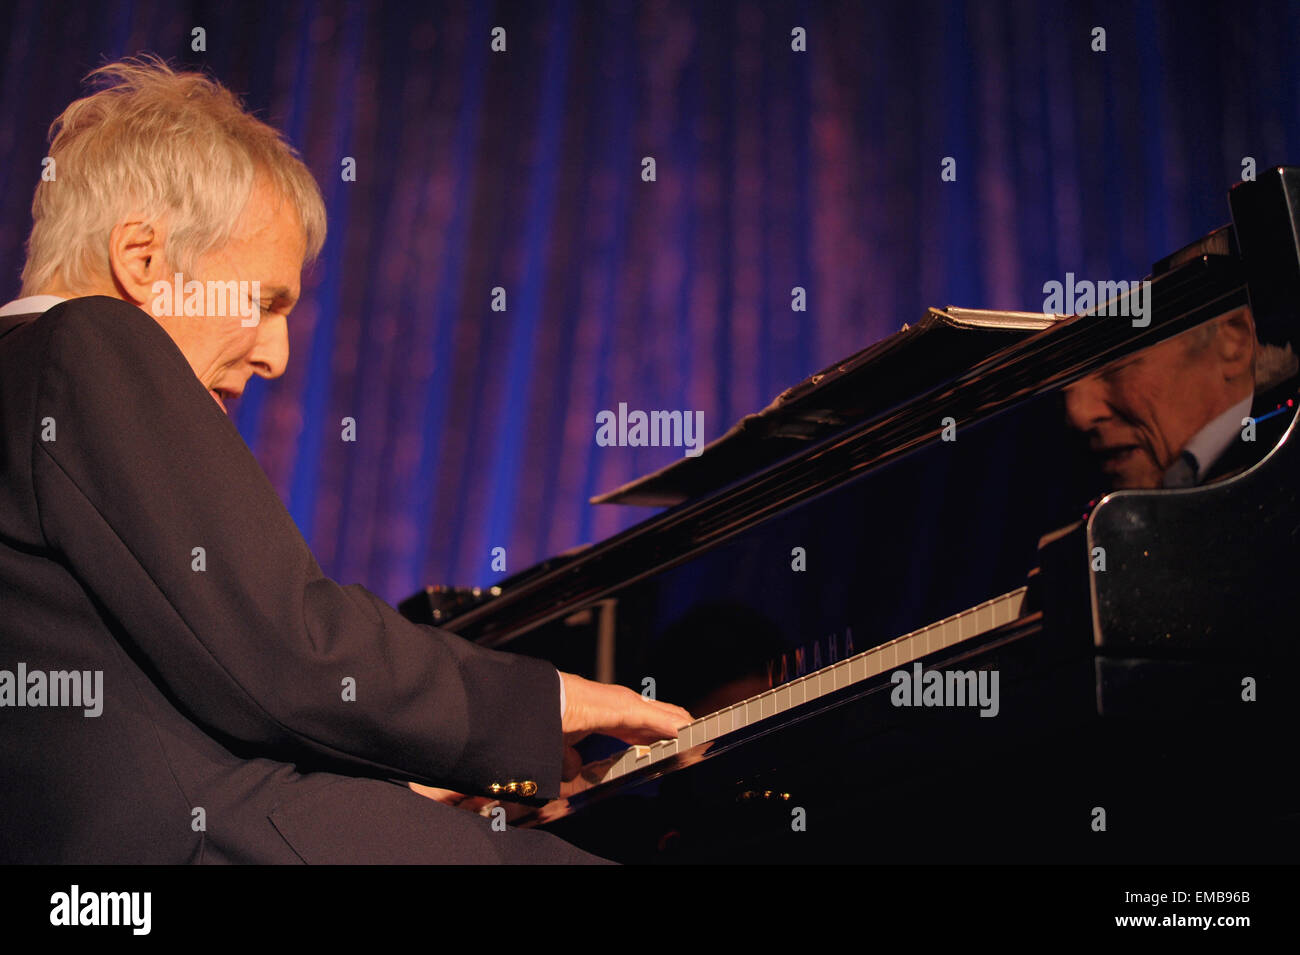 Komponist, Songwriter, Sänger und Pianist Burt Bacharach im Konzert am Klavier. Stockfoto